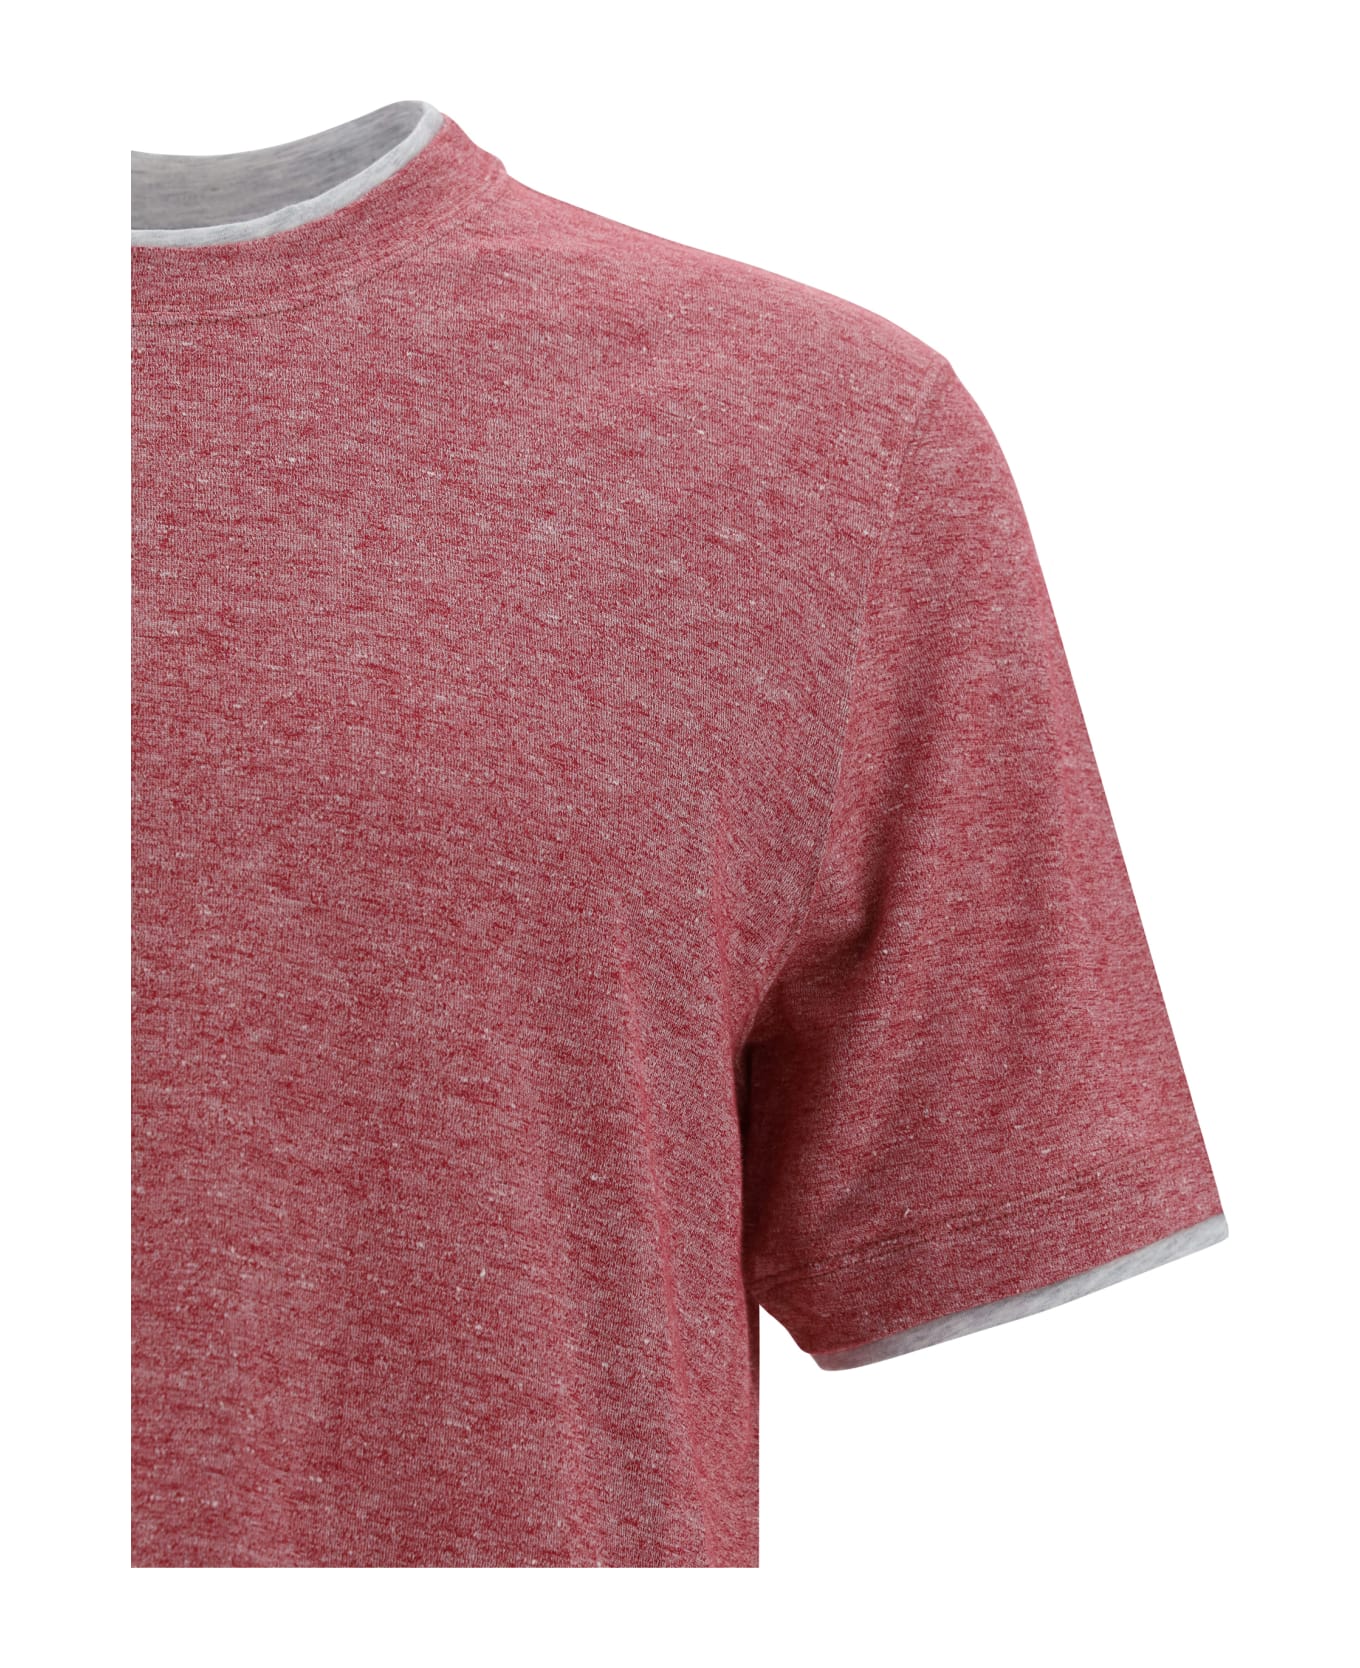 Brunello Cucinelli Cotton T-shirt - Lampone+grigio Chiaro シャツ